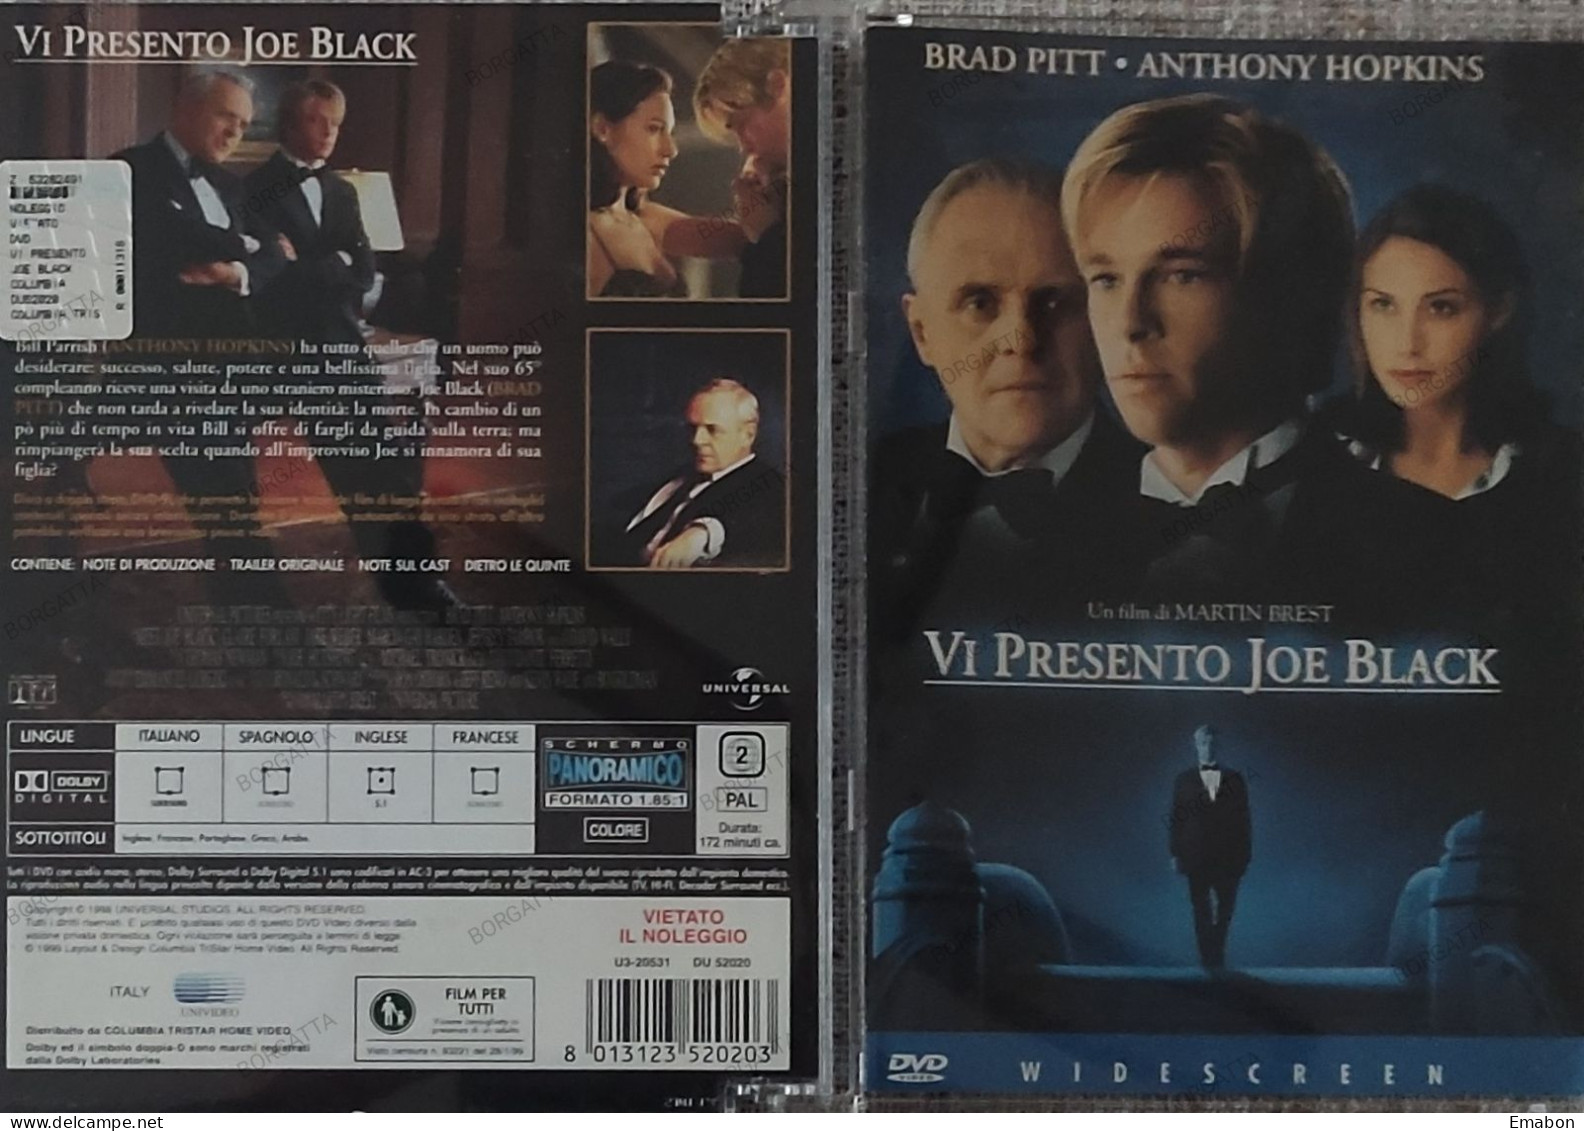 BORGATTA - FANTASTICO - Dvd " VI PRESENTO JOE BLACK "- PITT, HOPKINS - COLUMBIA 1999 -  USATO In Buono Stato - Mystery